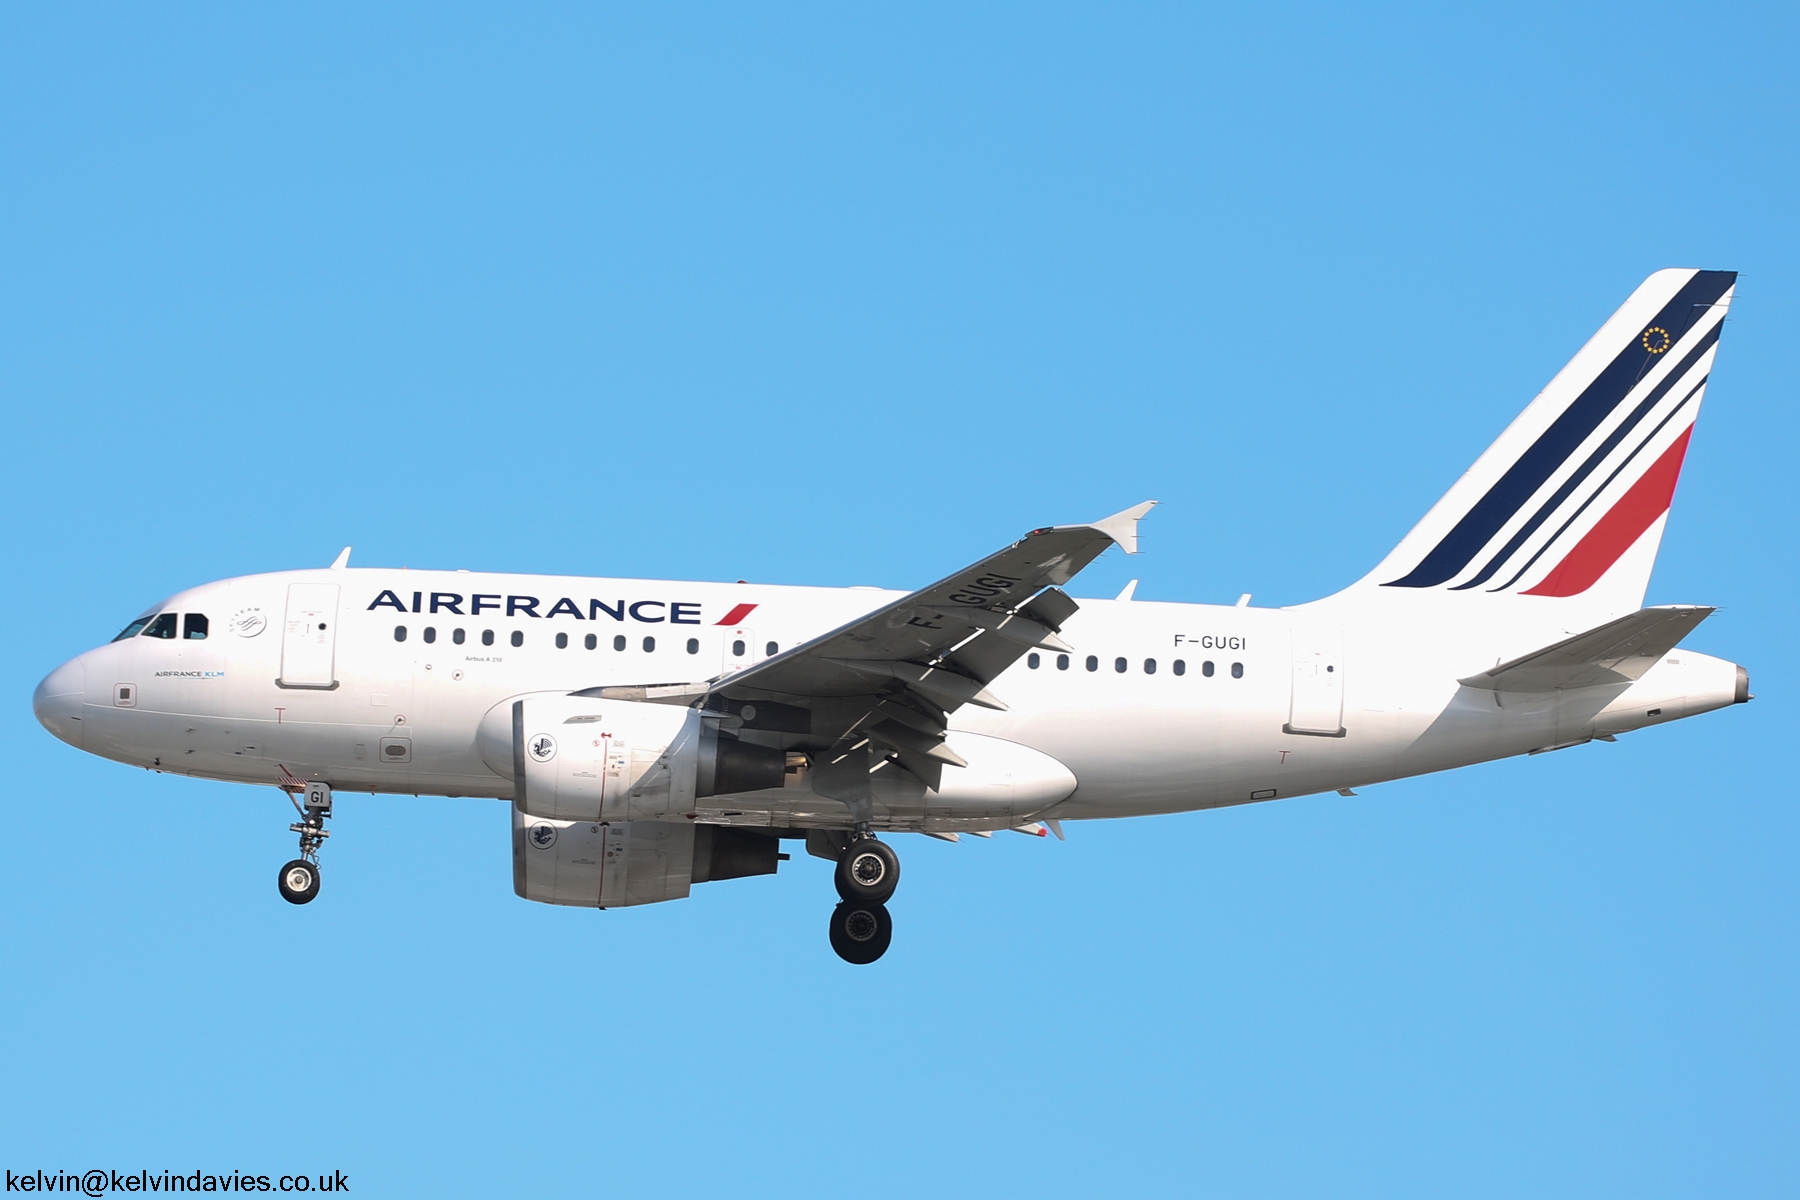 Air France A318 F-GUGI